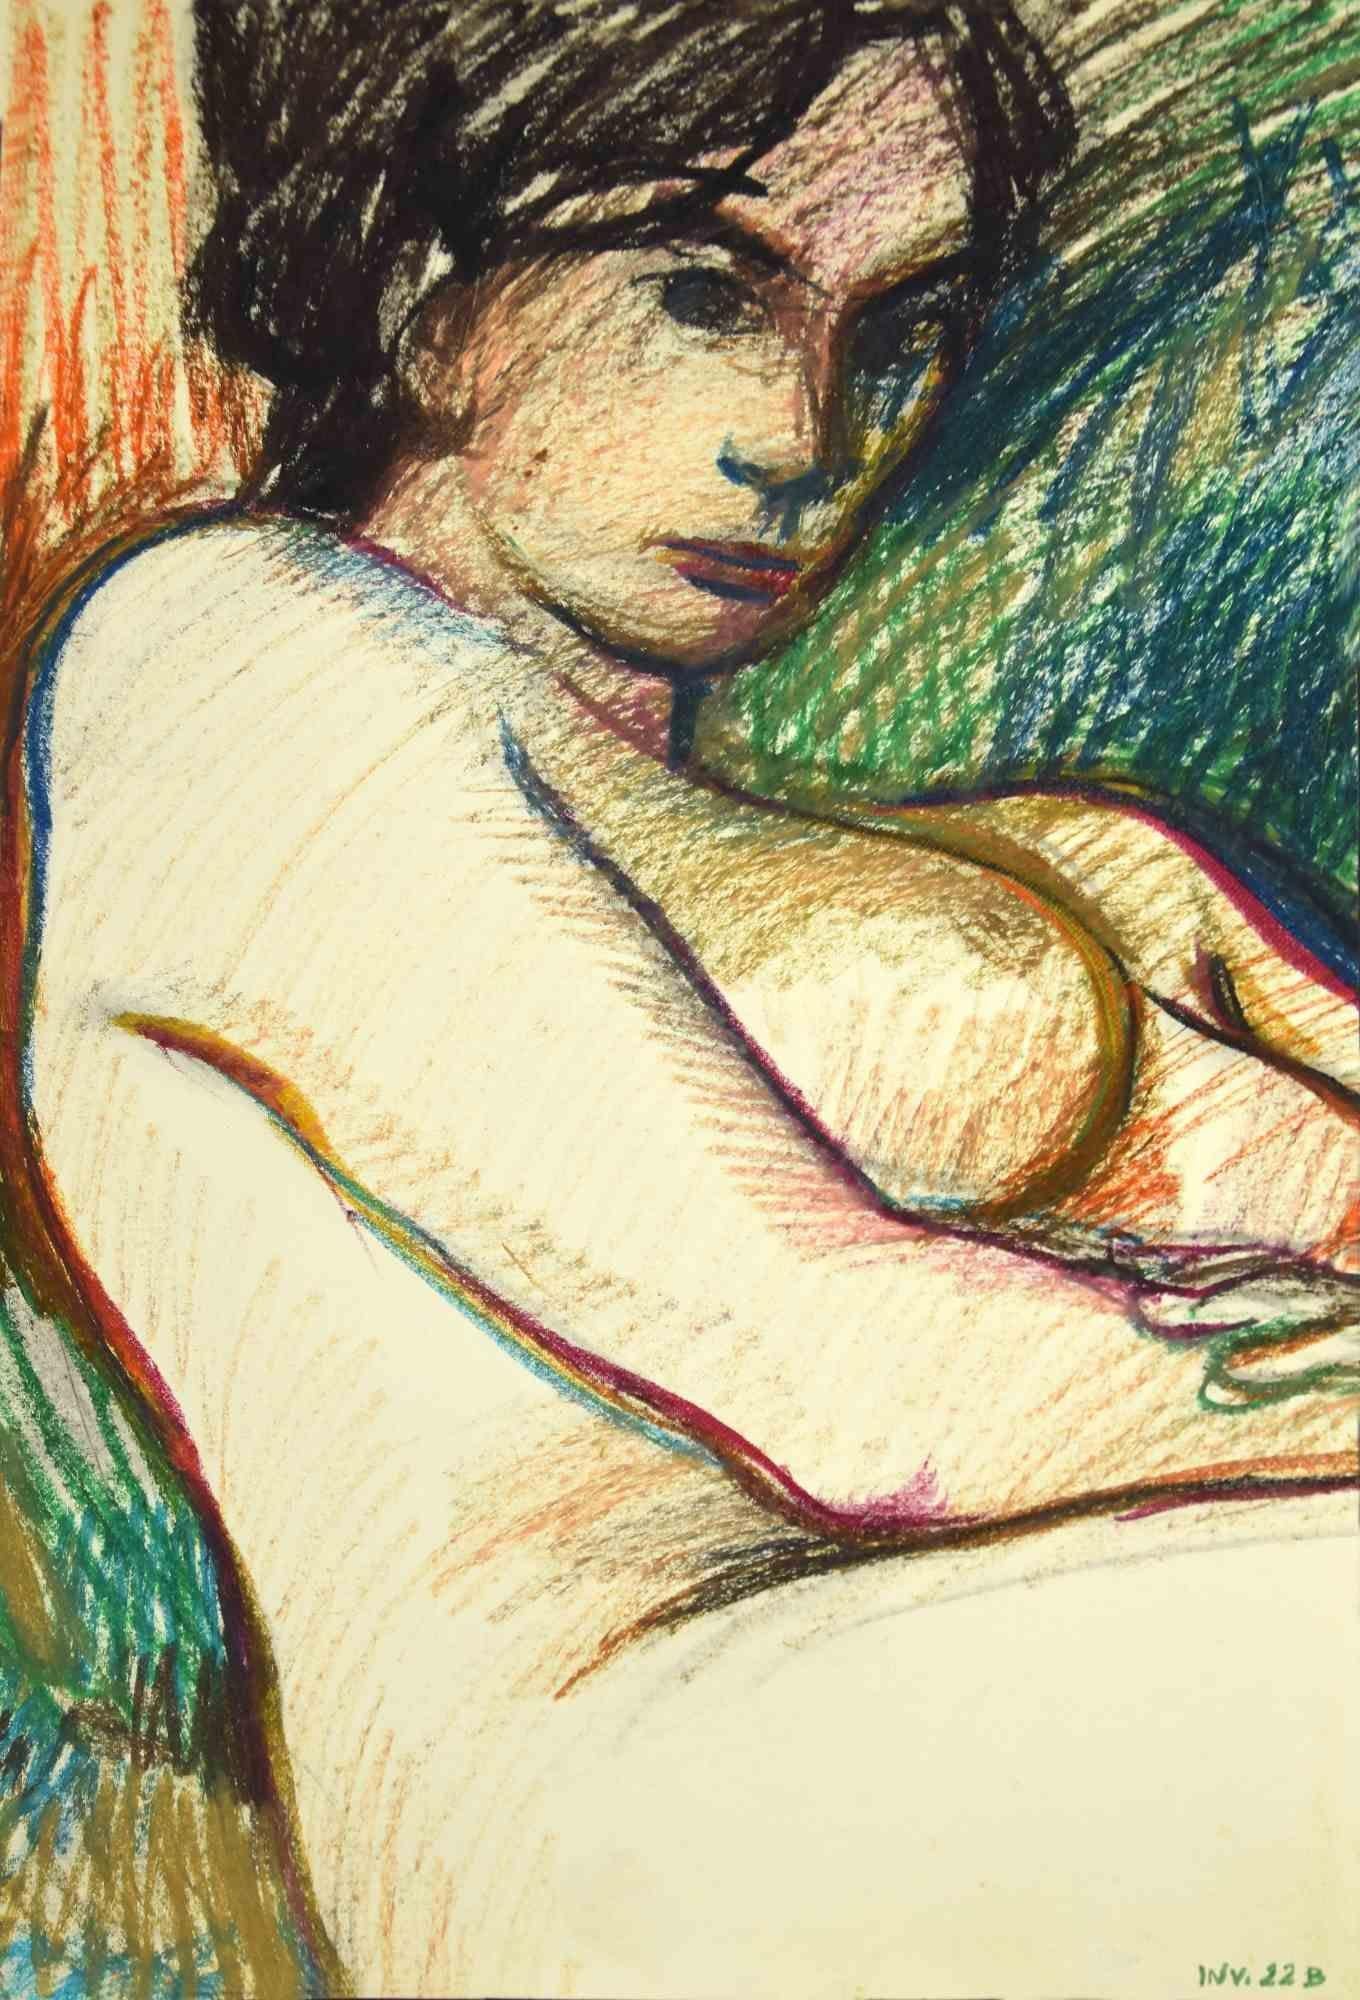 Reclined Nude ist eine Originalzeichnung in Kohle und Ölpastell von Leo Guida aus den 1970er Jahren.

Guter Zustand mit Ausnahme einiger Stockflecken und einer Falte auf der rechten unteren Seite.

Das Kunstwerk wird durch kräftige Striche mit